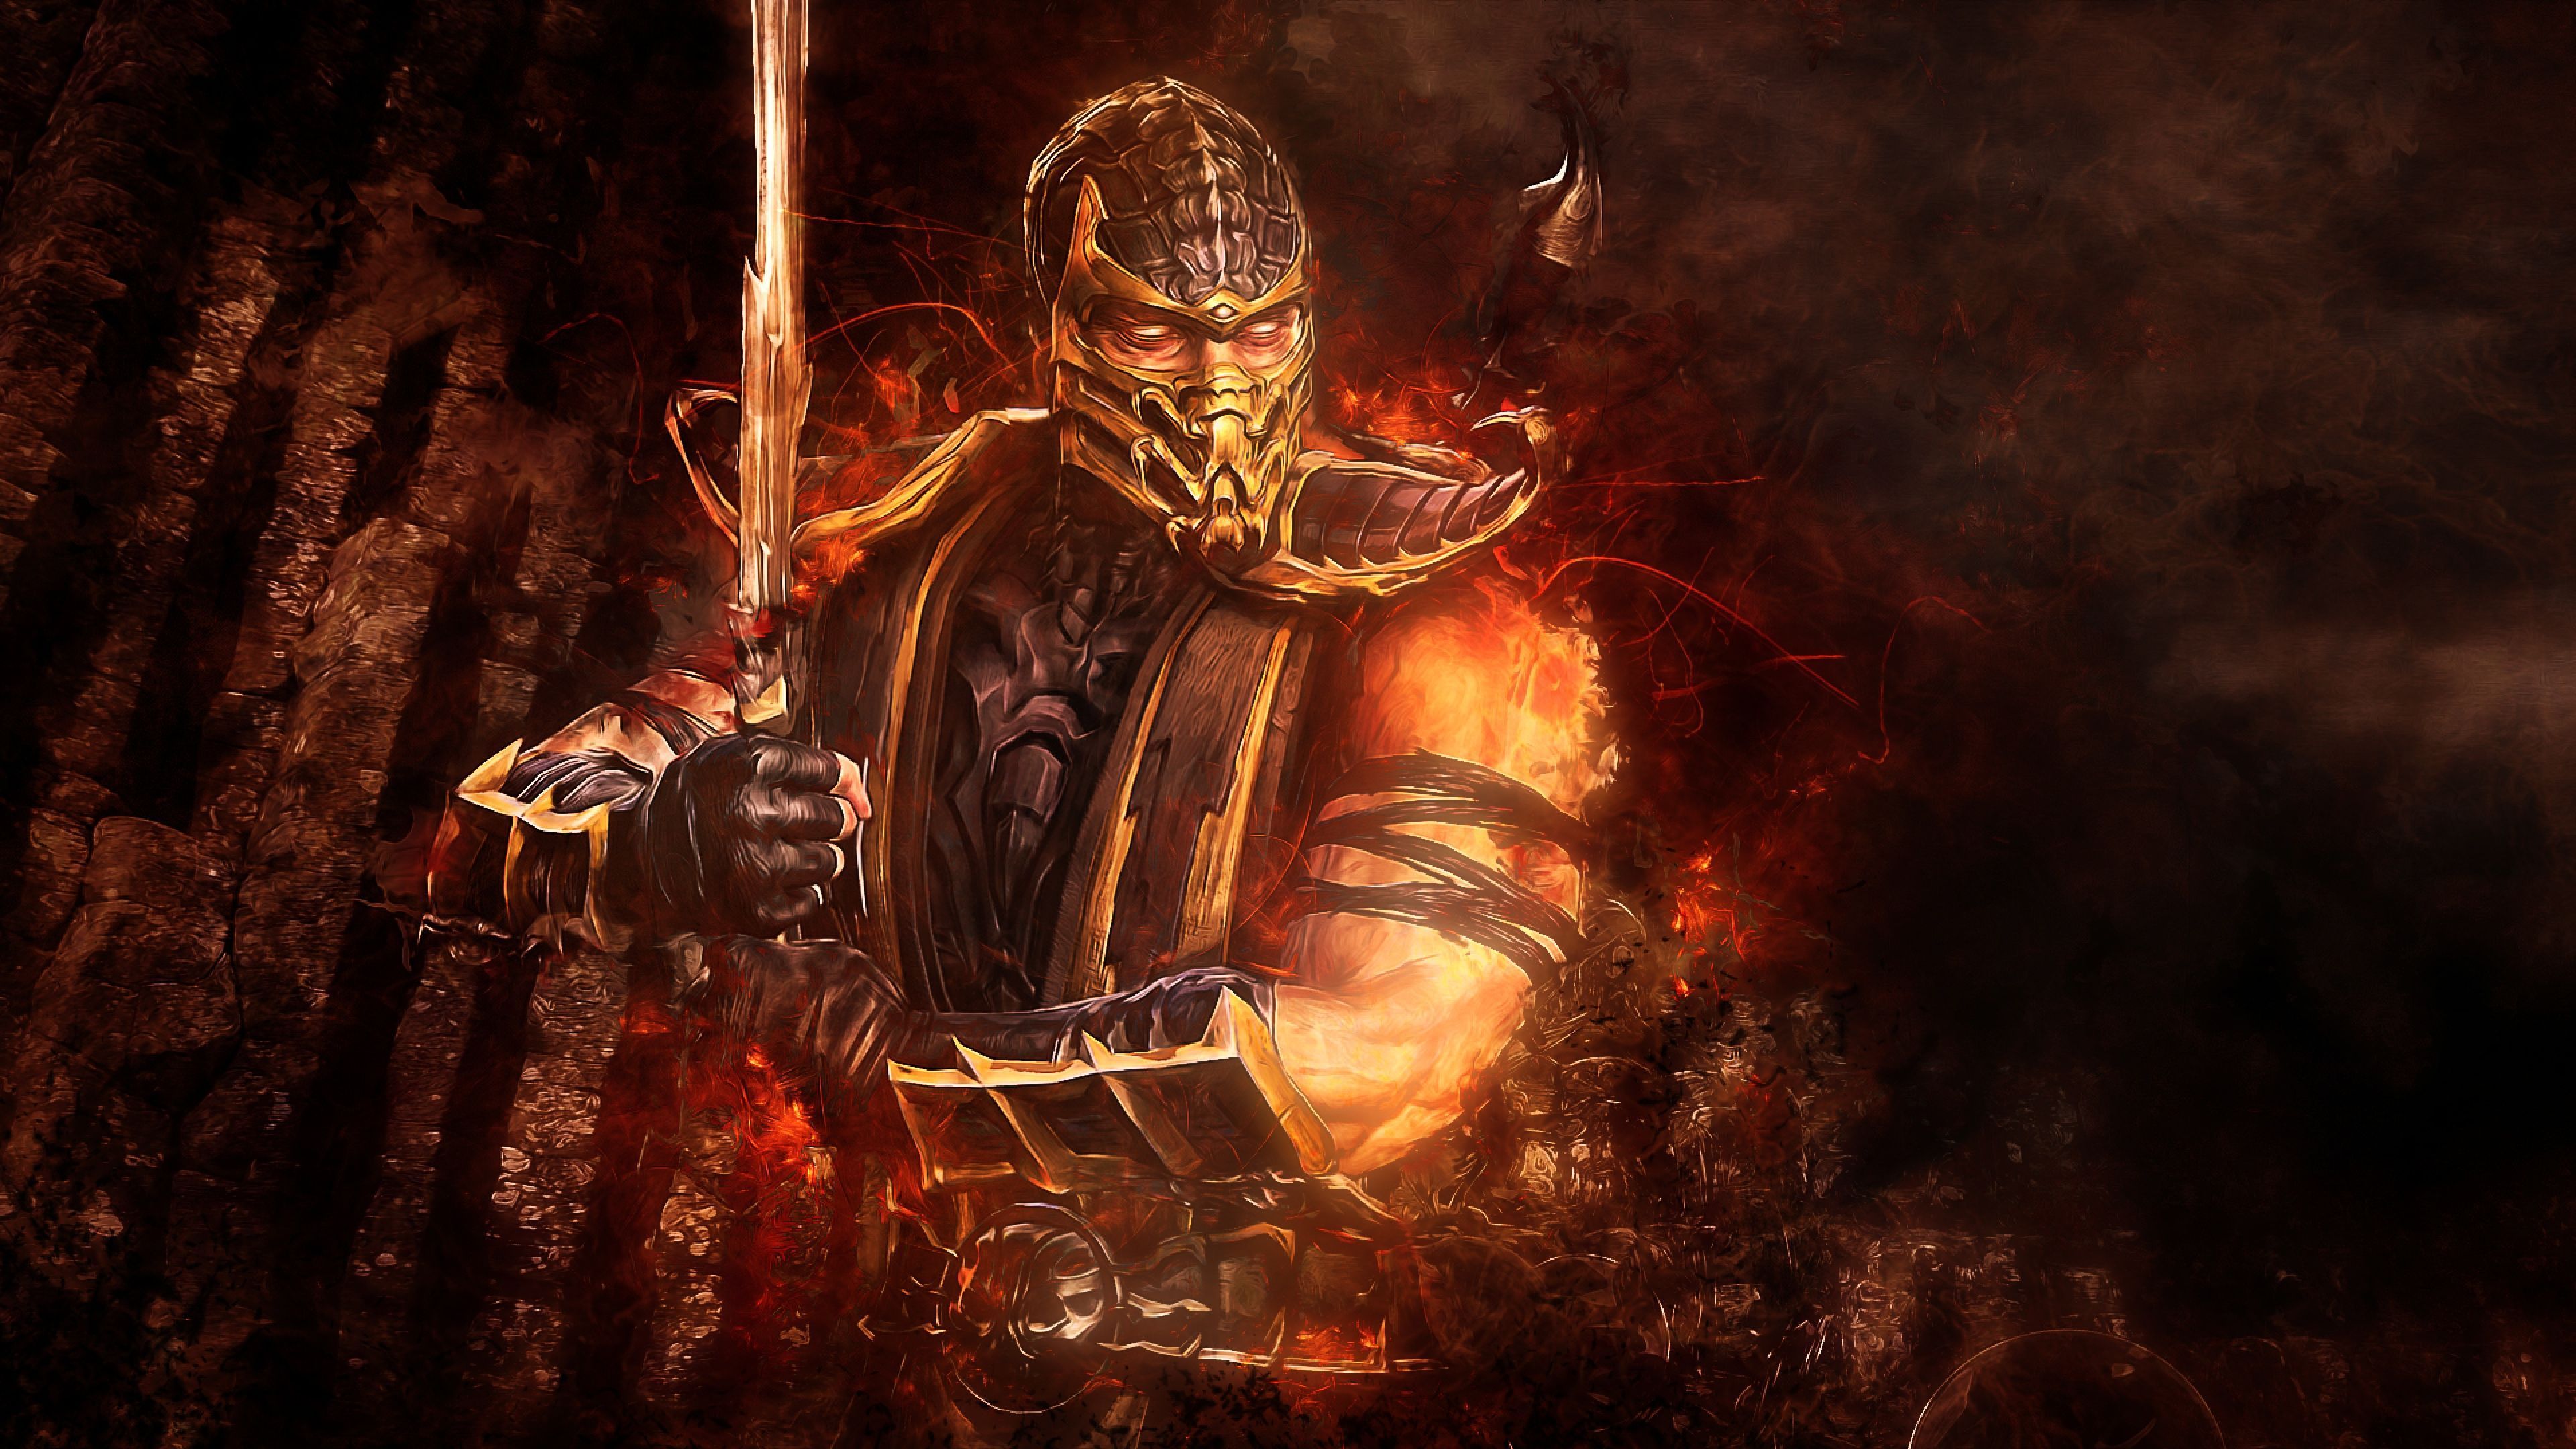 4K Ultra HD Mortal kombat Wallpapers HD, Desktop Backgrounds ...